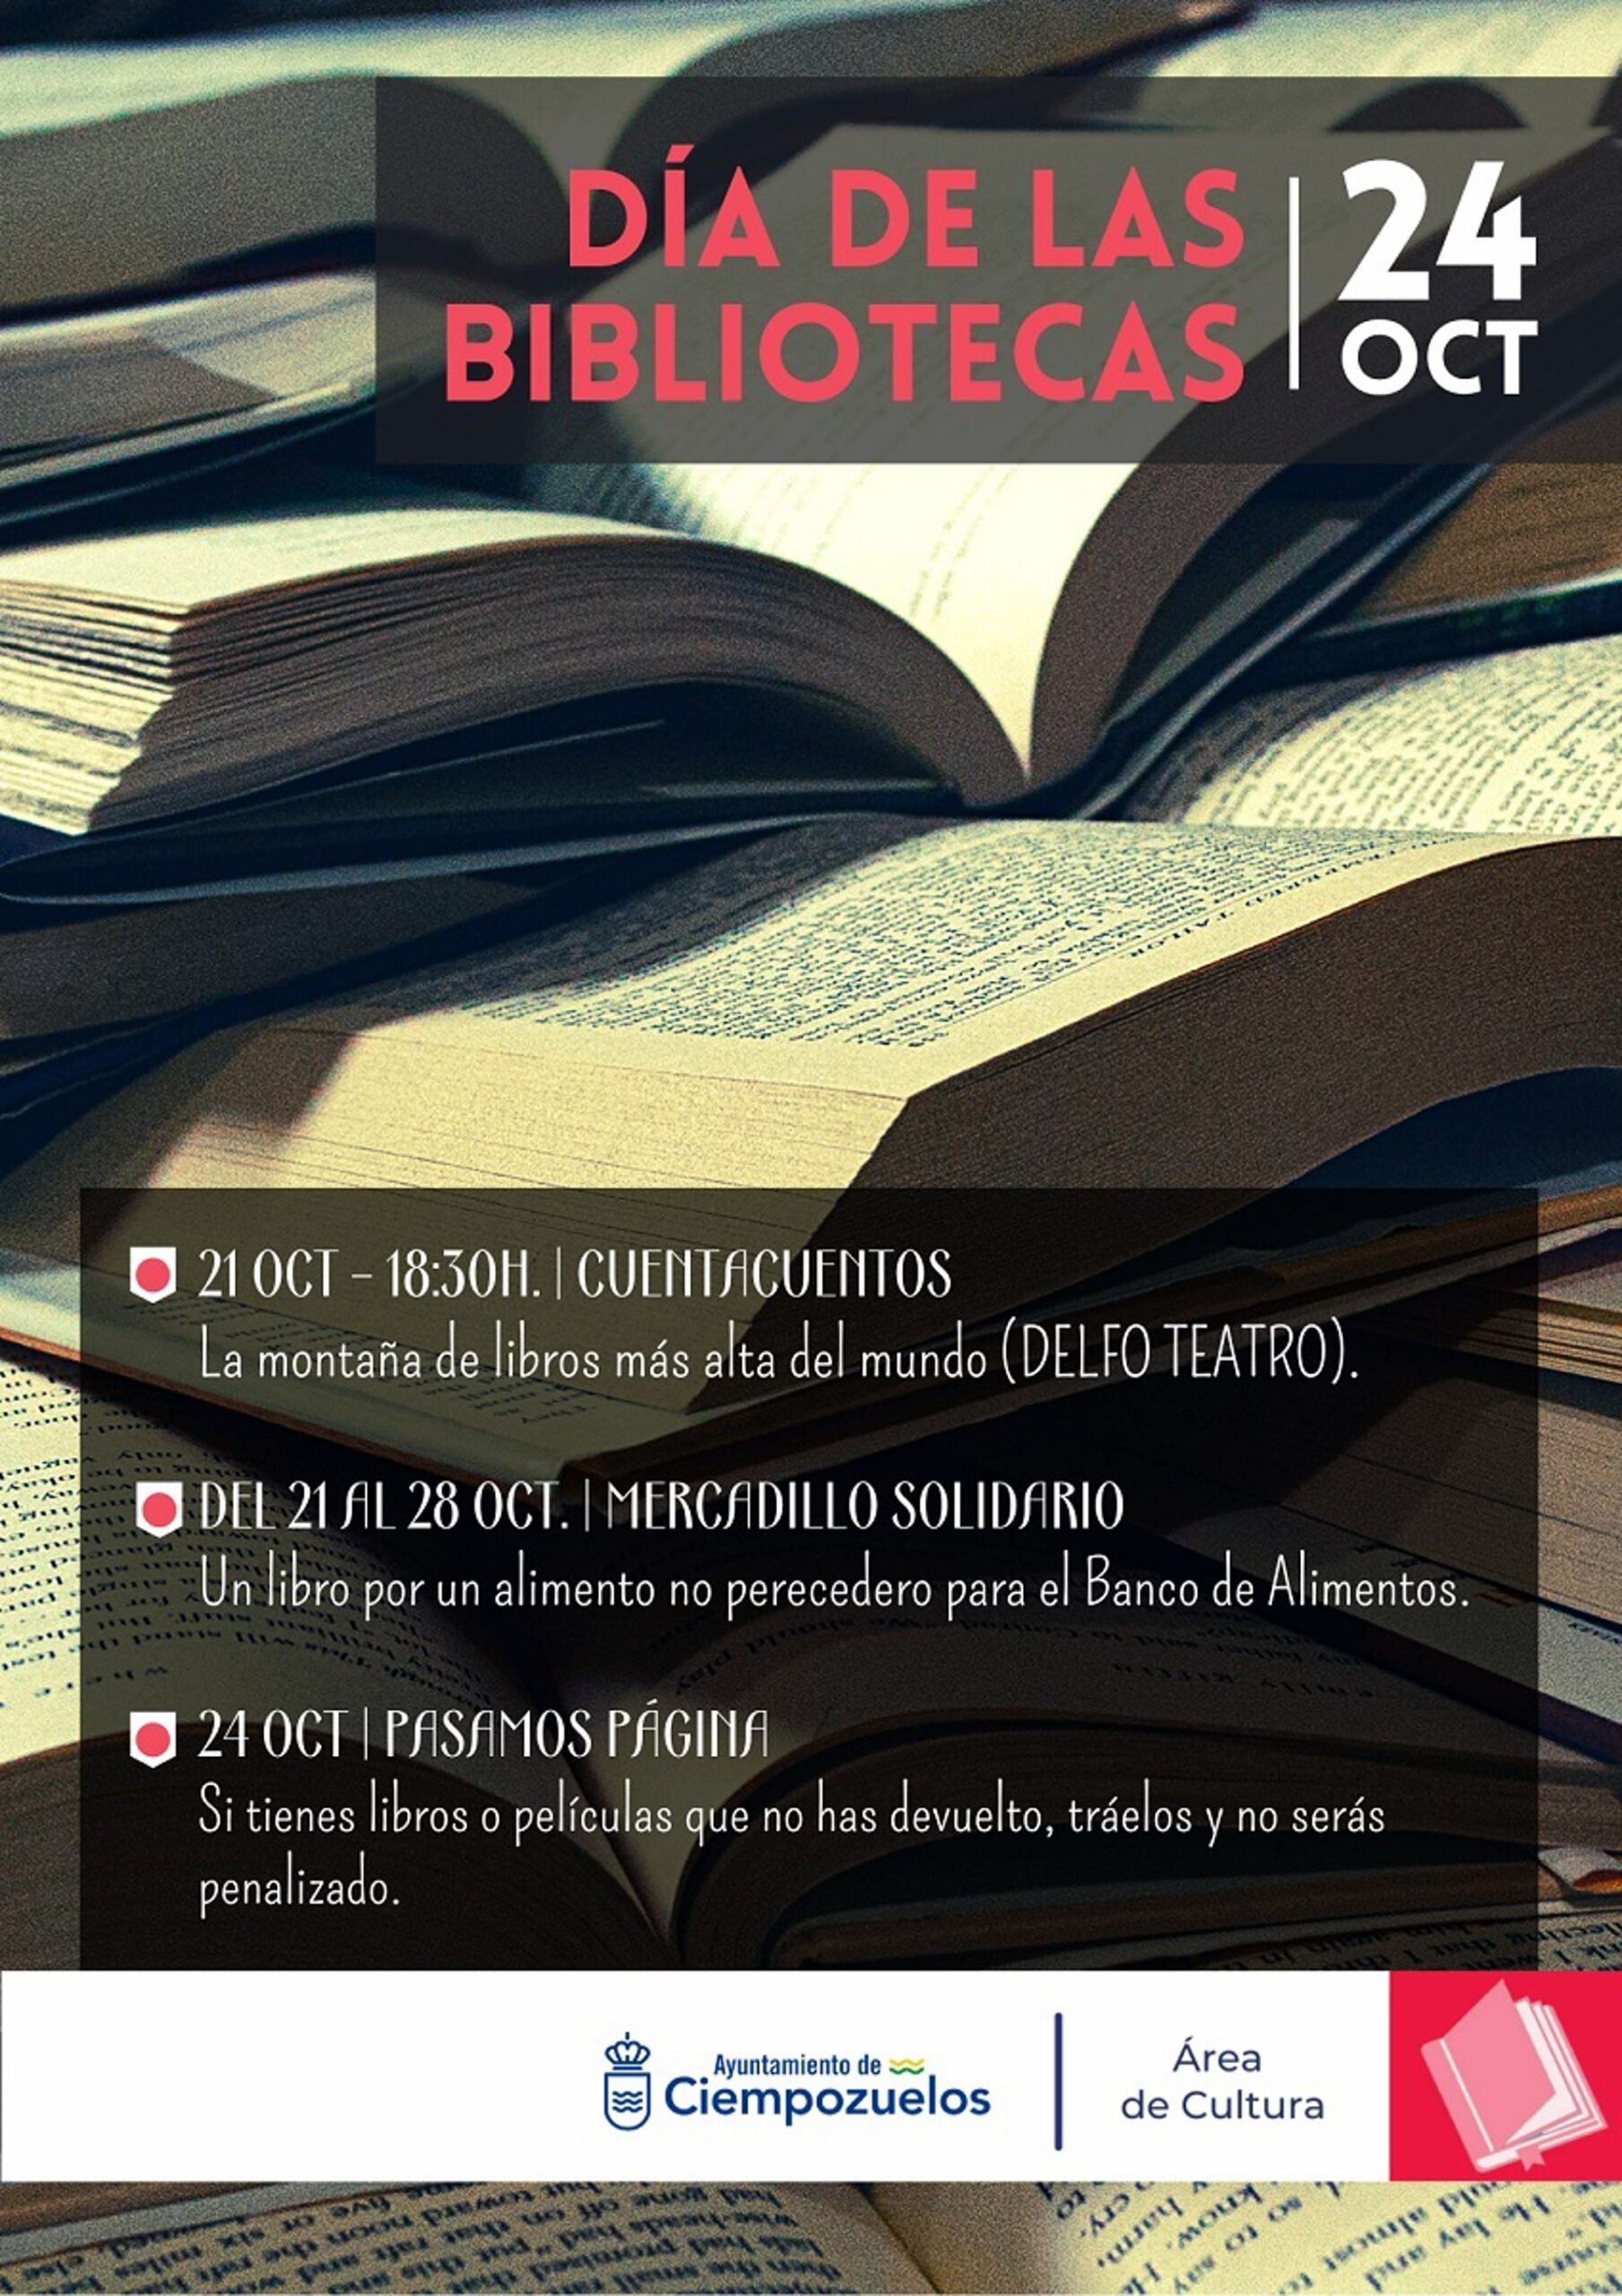 Día de las Bibliotecas en Ciempozuelos